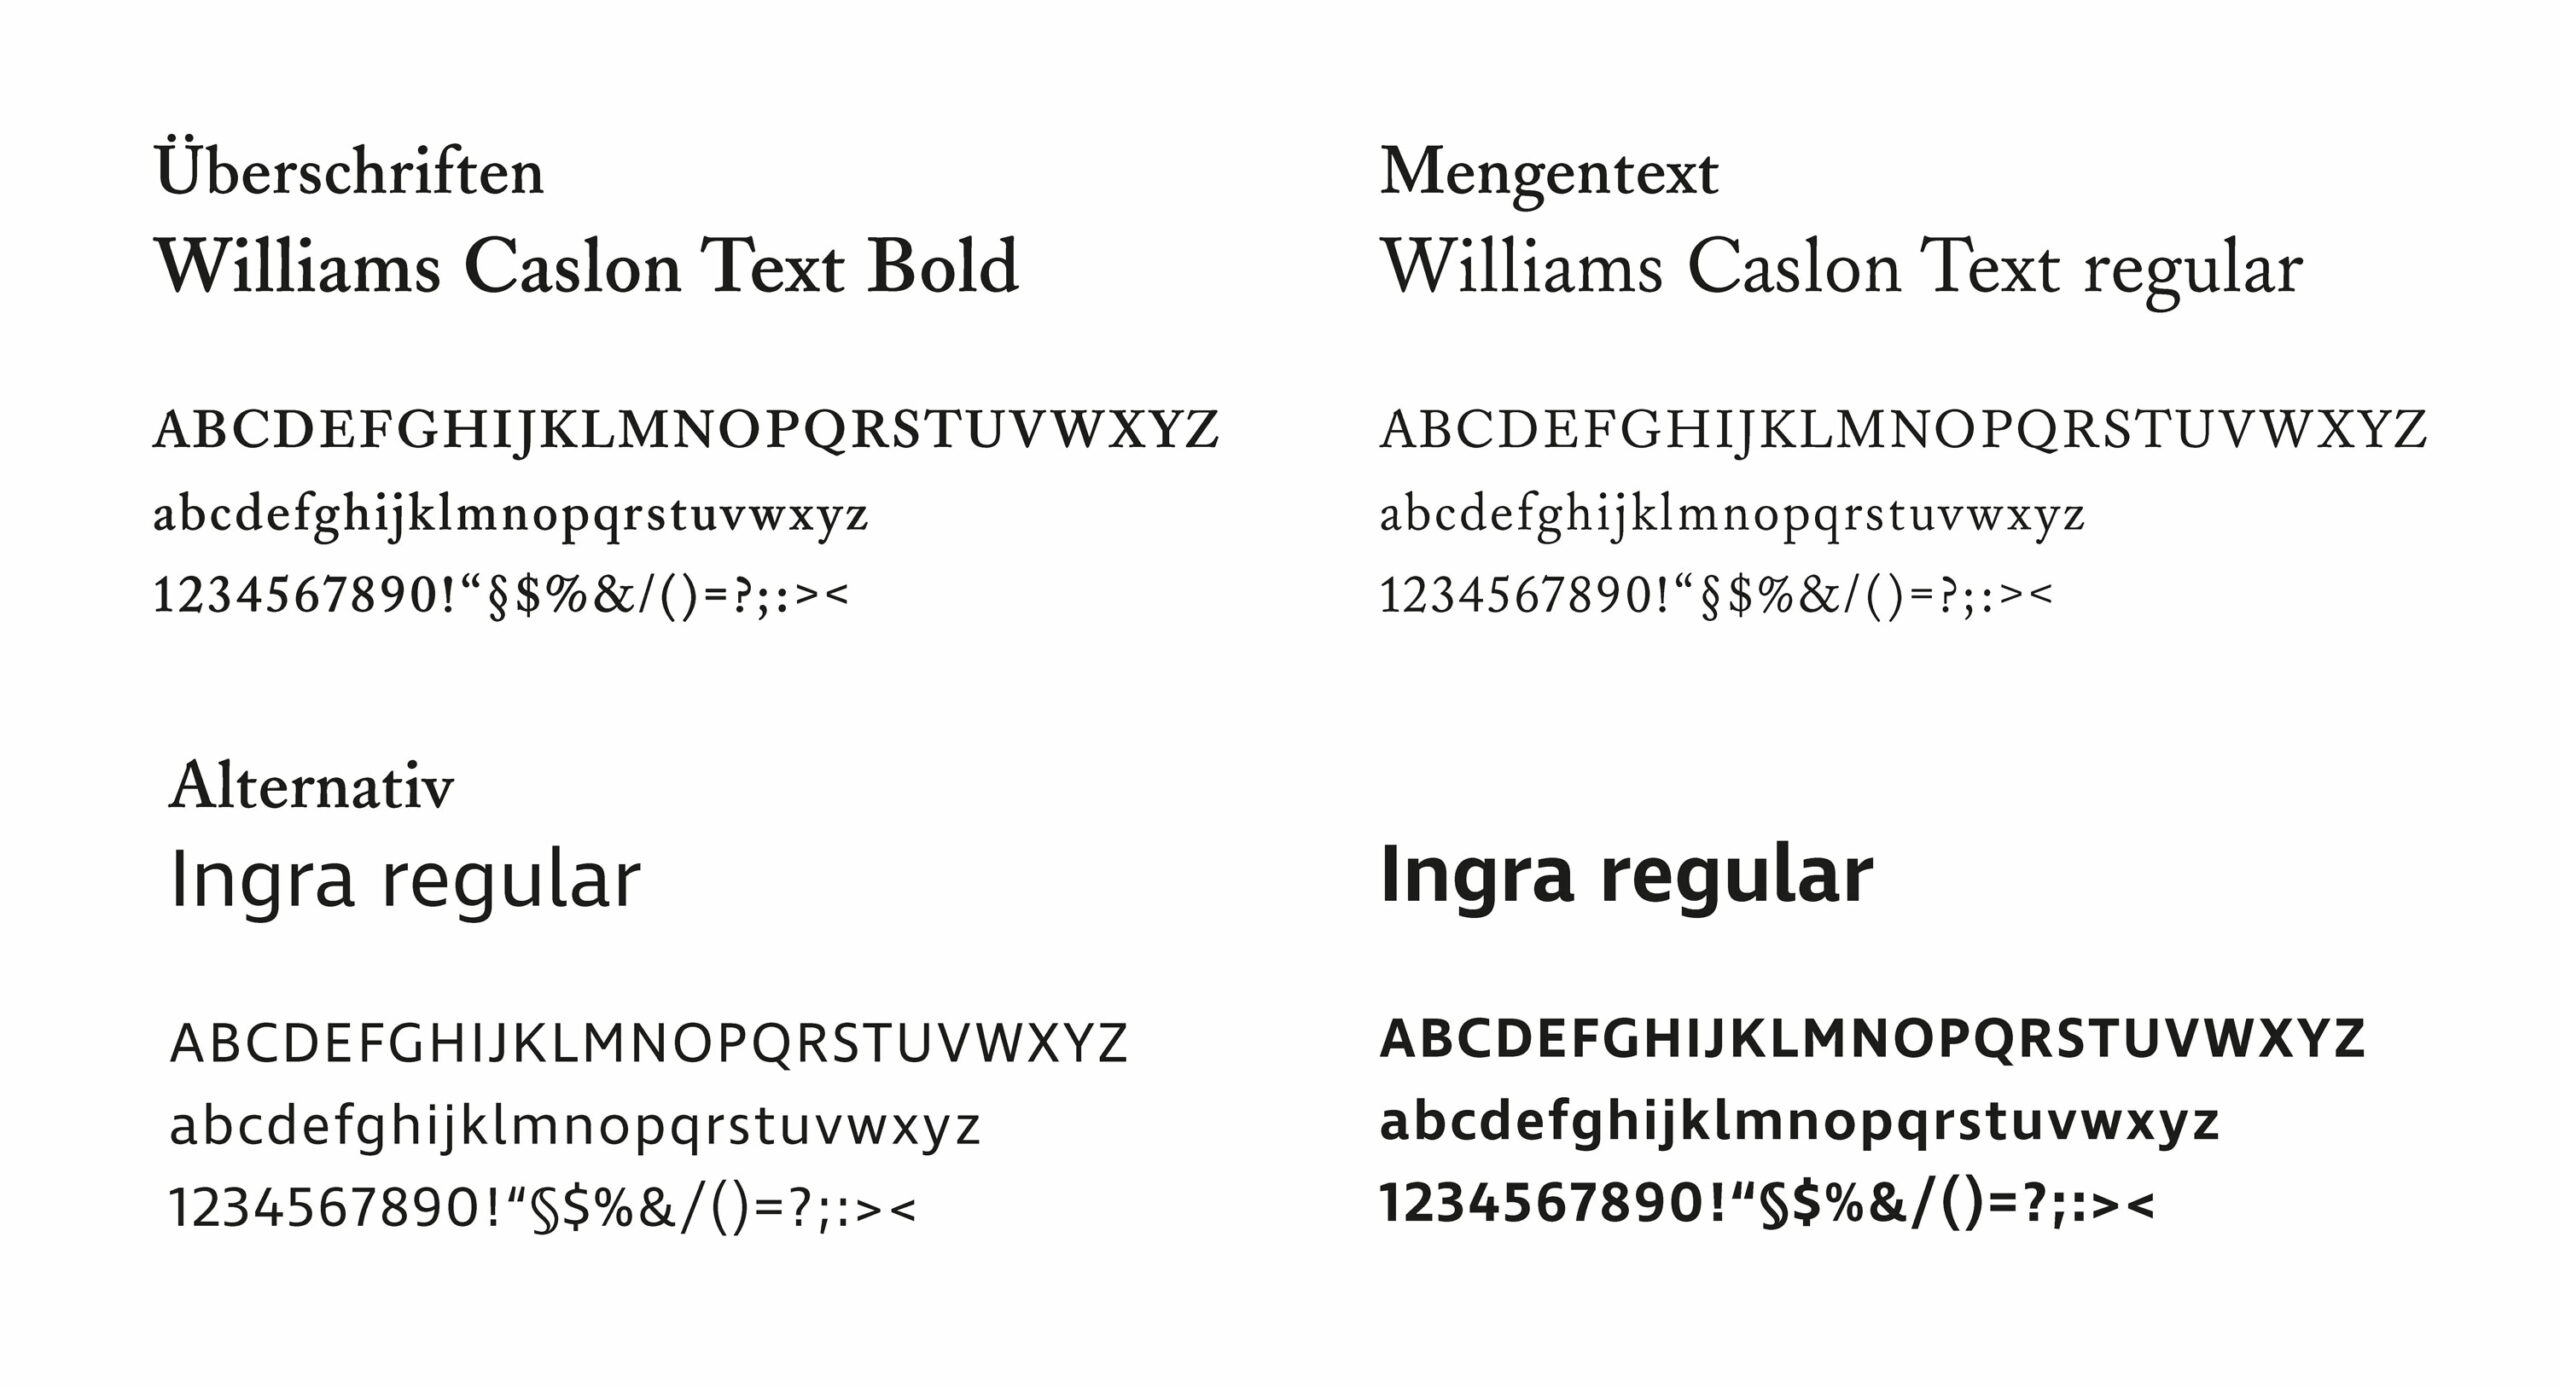 verwendete Fonts des Corporate Designs, Font der Überschriften und des Mengentextes